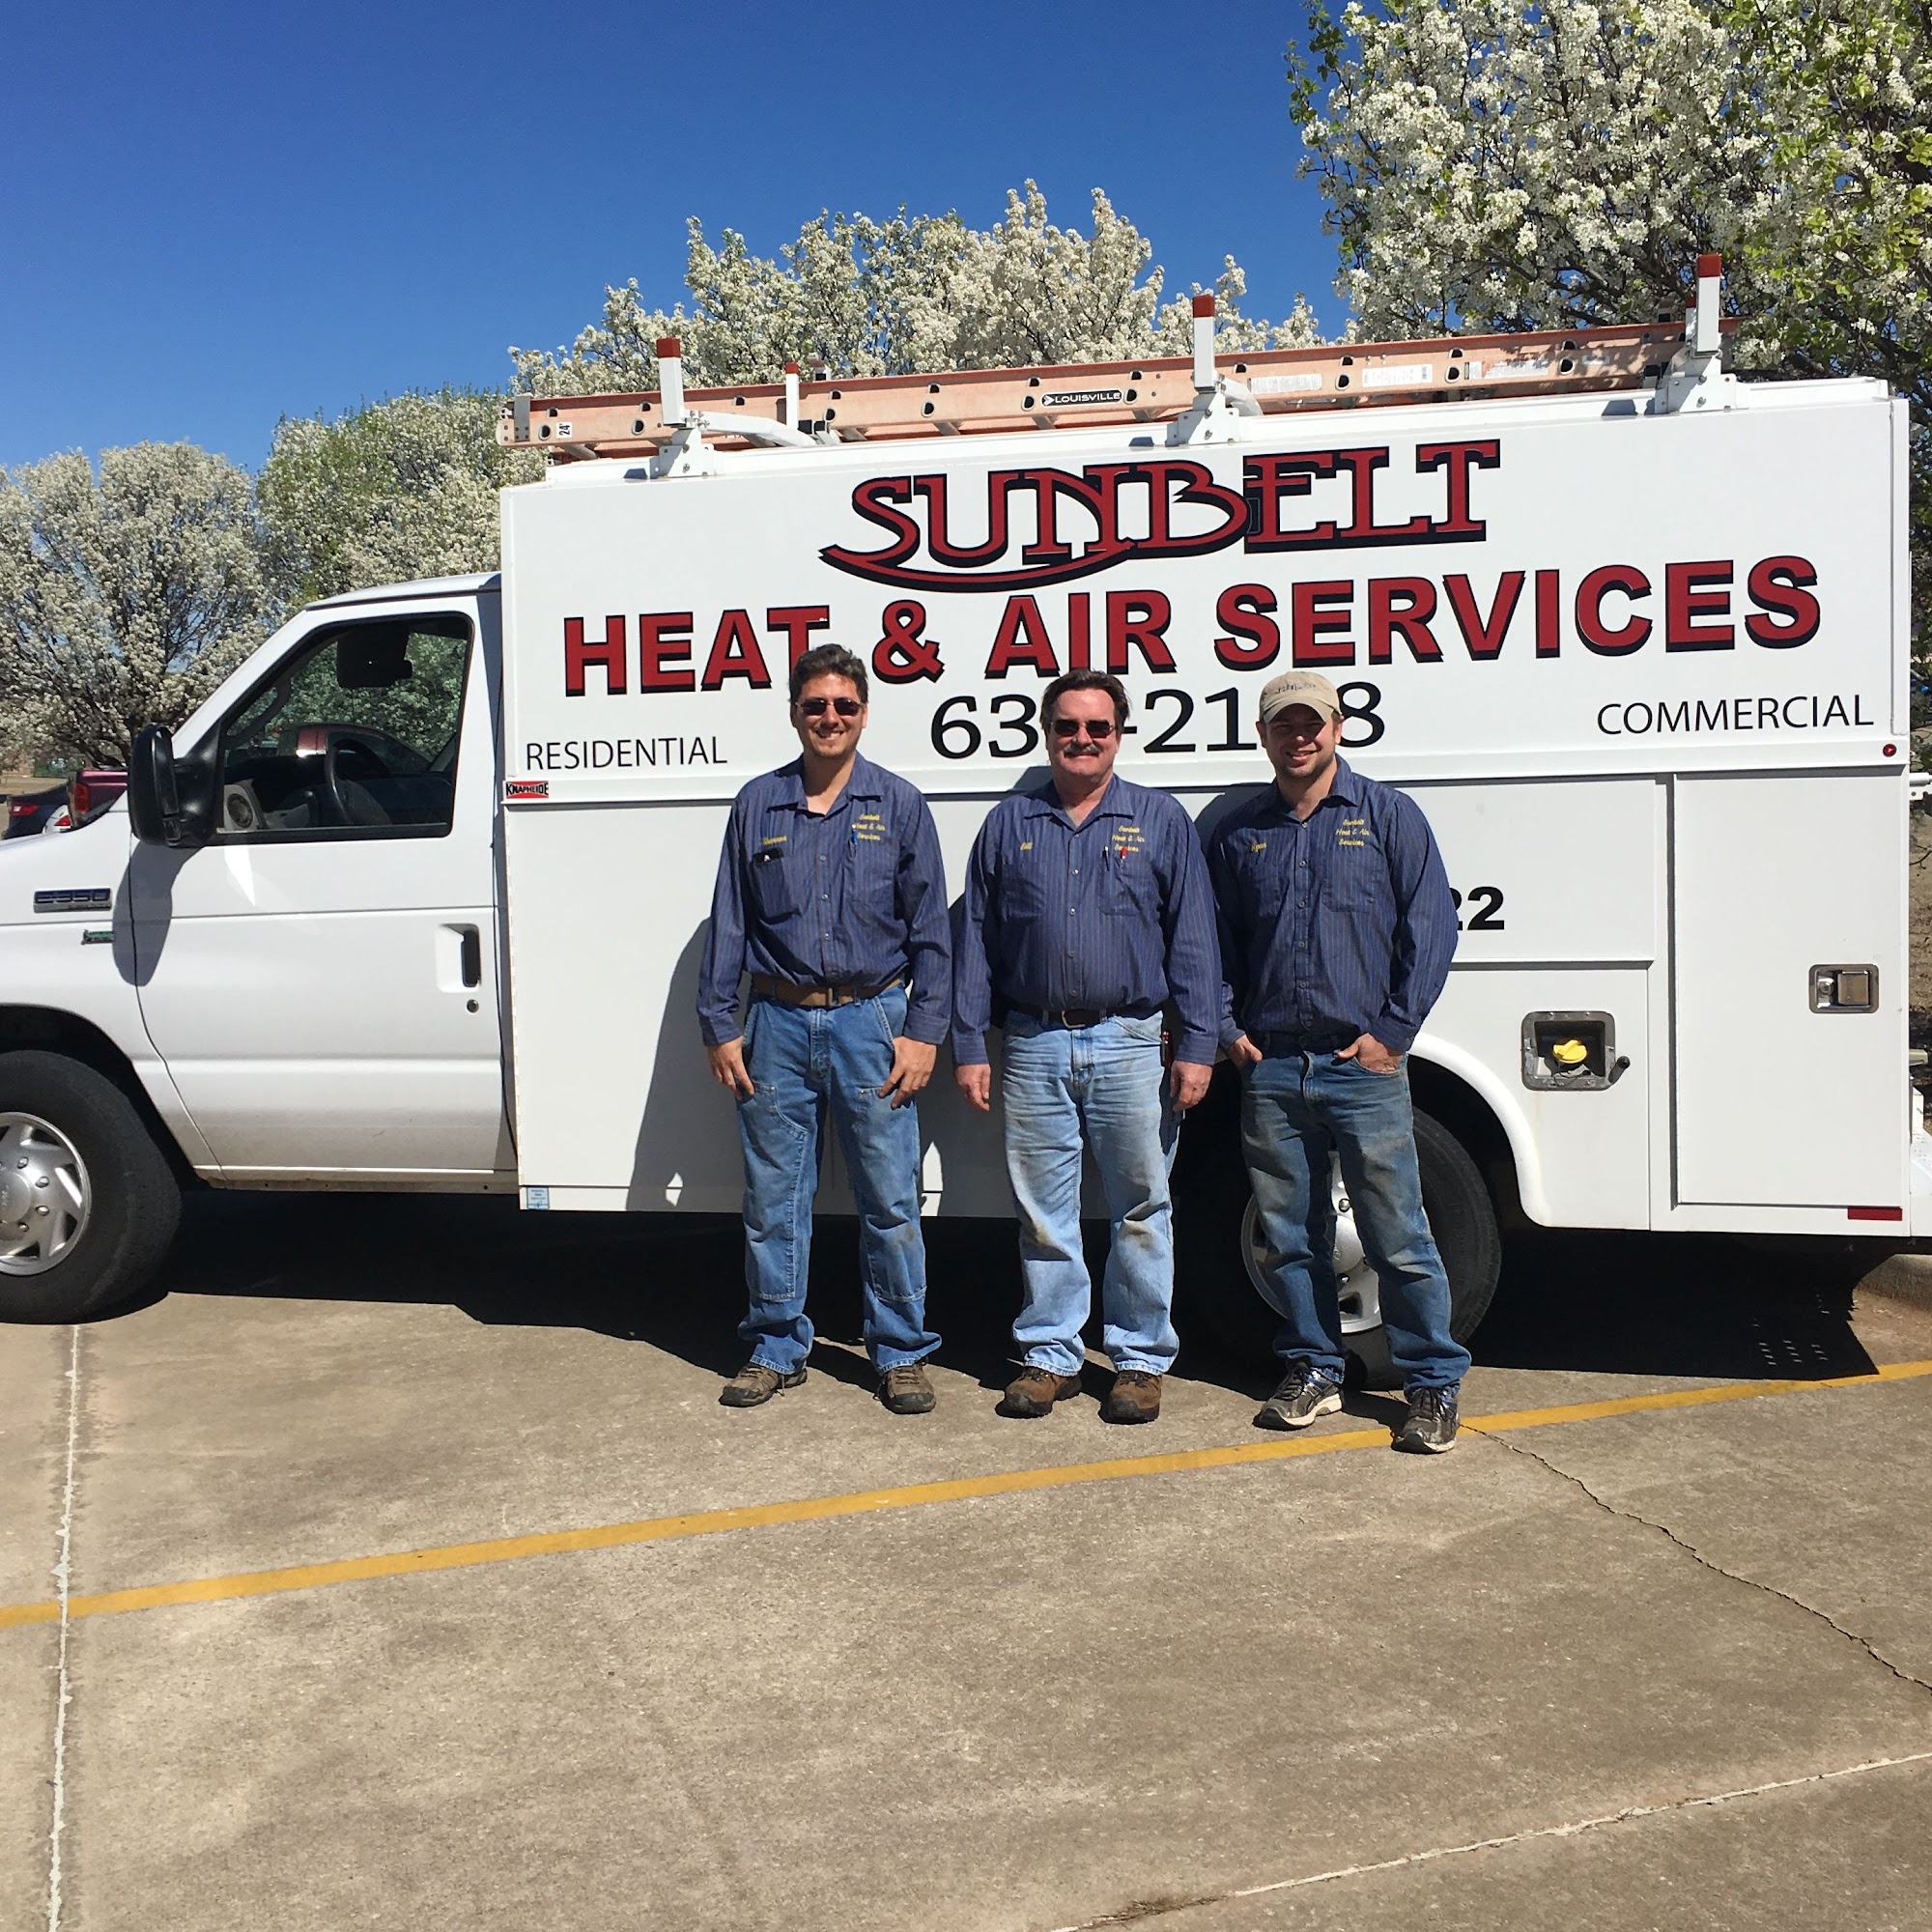 Sunbelt Heat & Air Services Inc